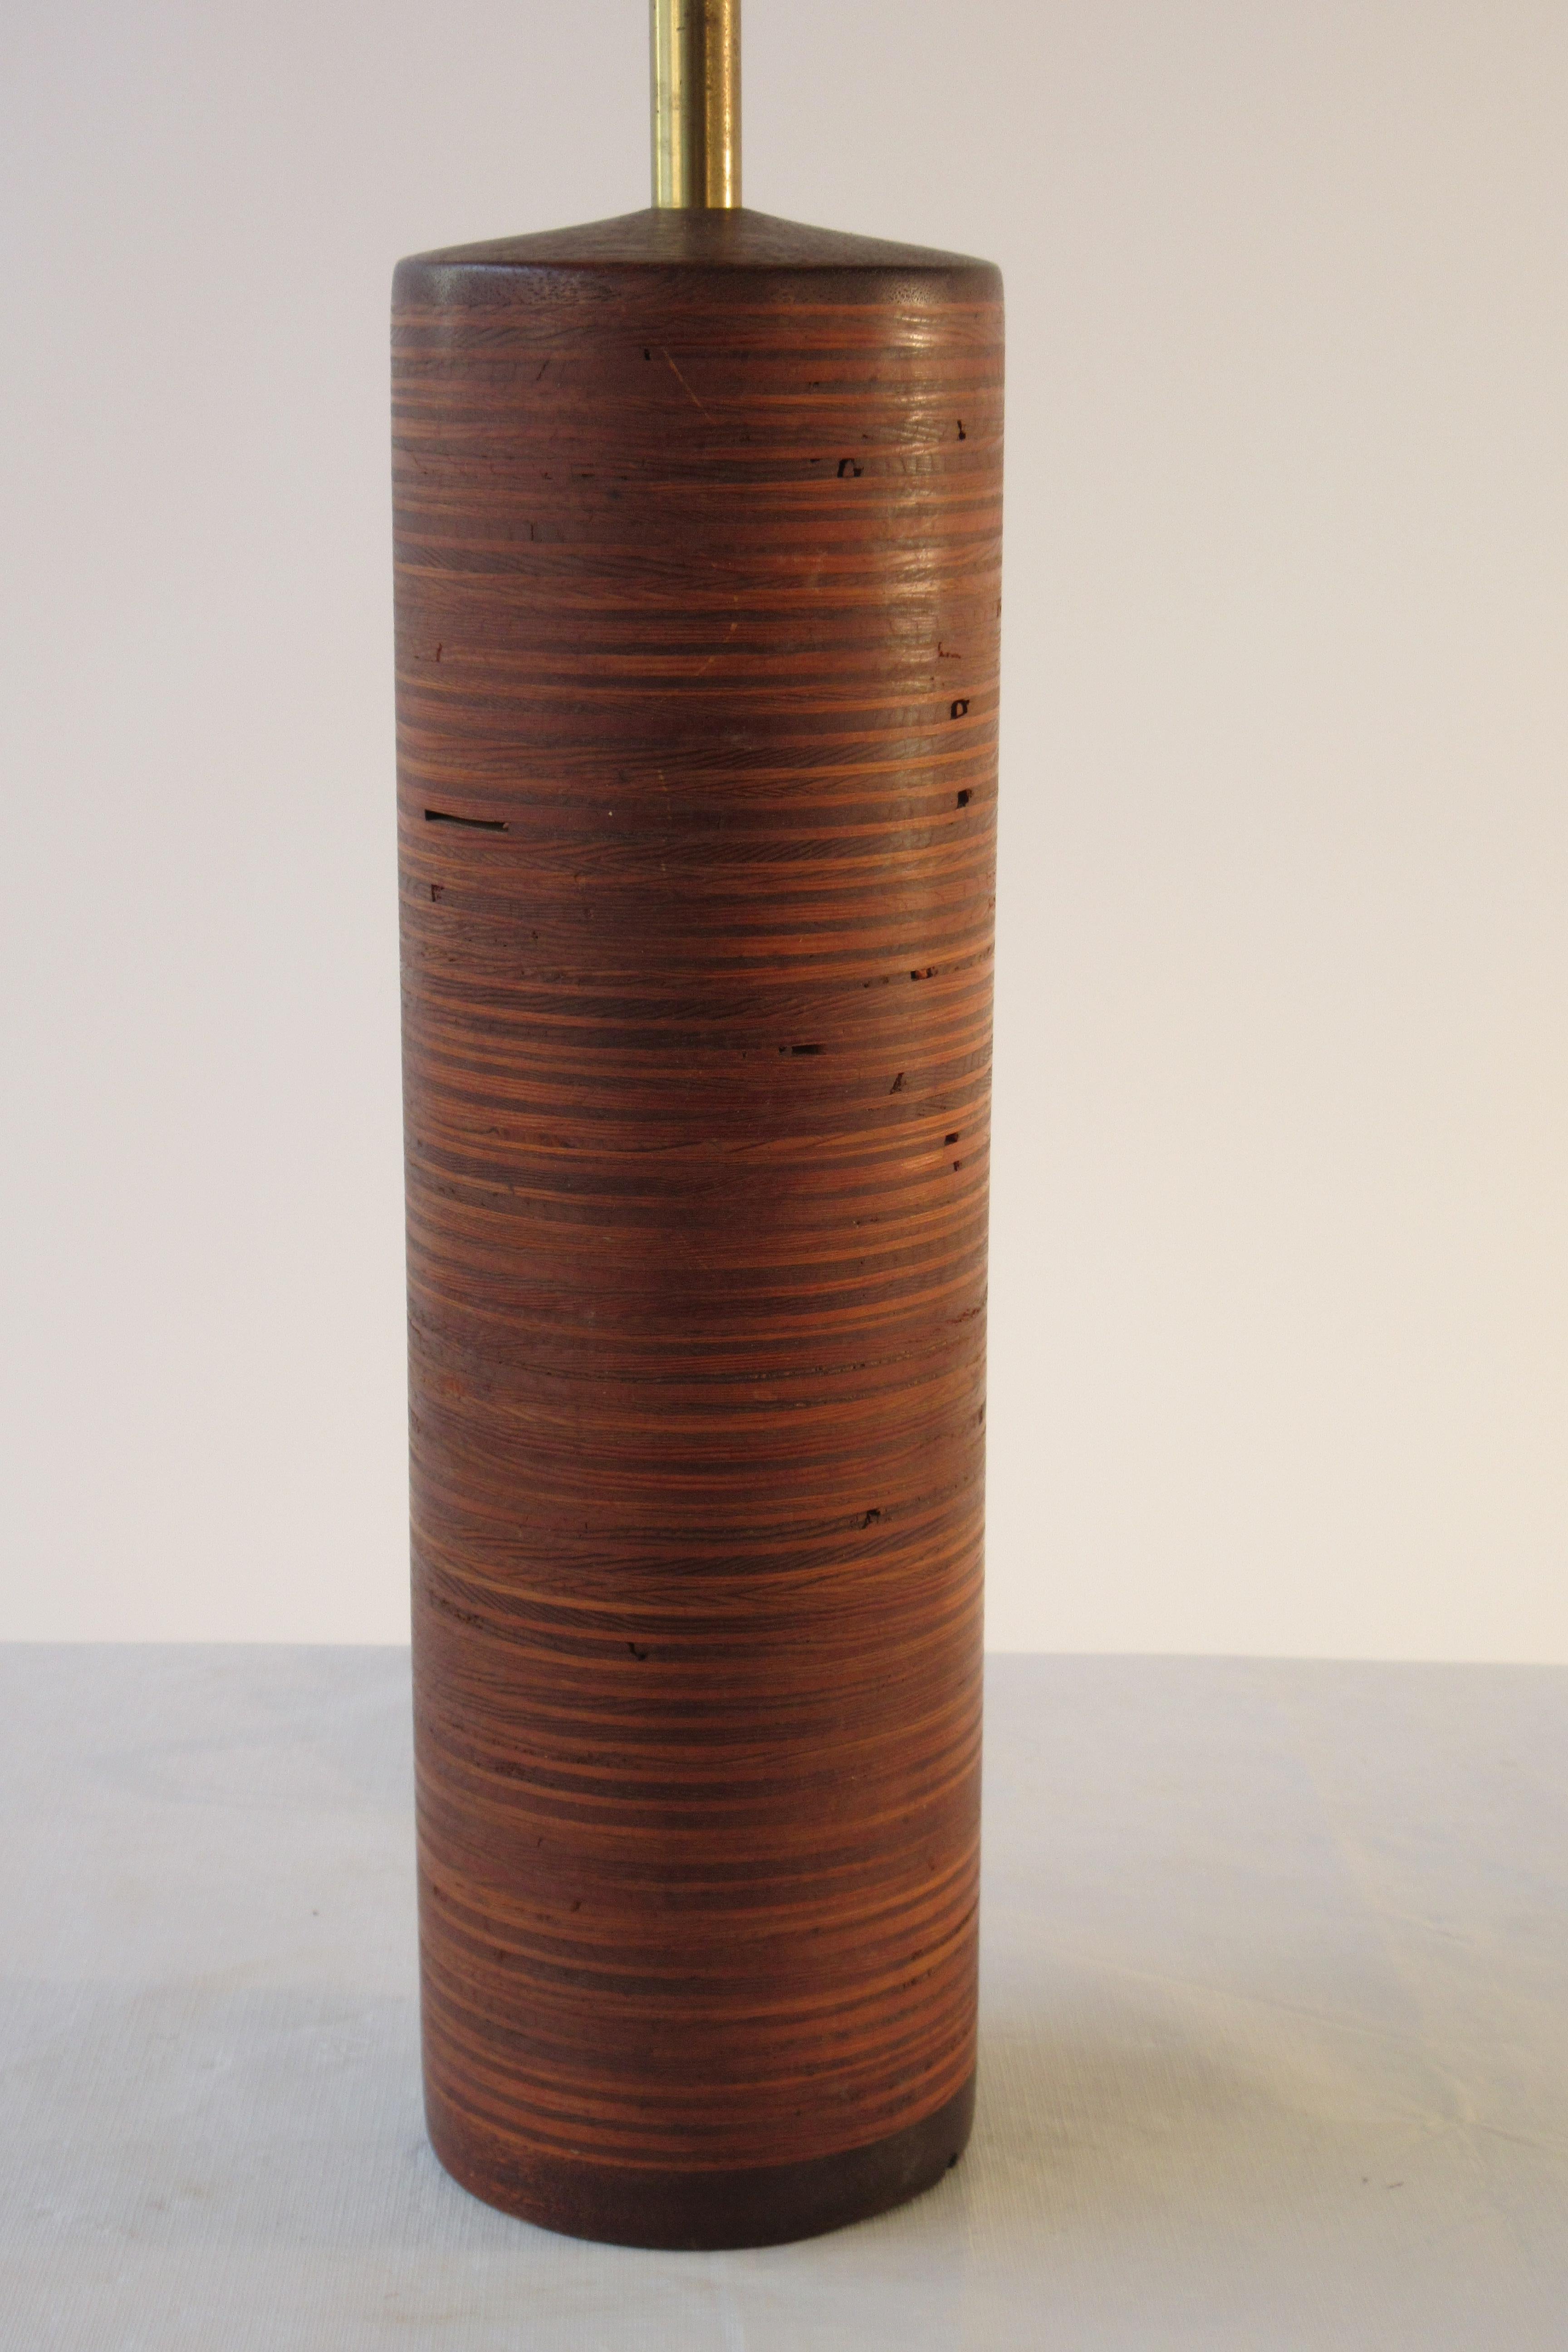 lampe cylindrique en bois rayé des années 1950. Il faut refaire le câblage.